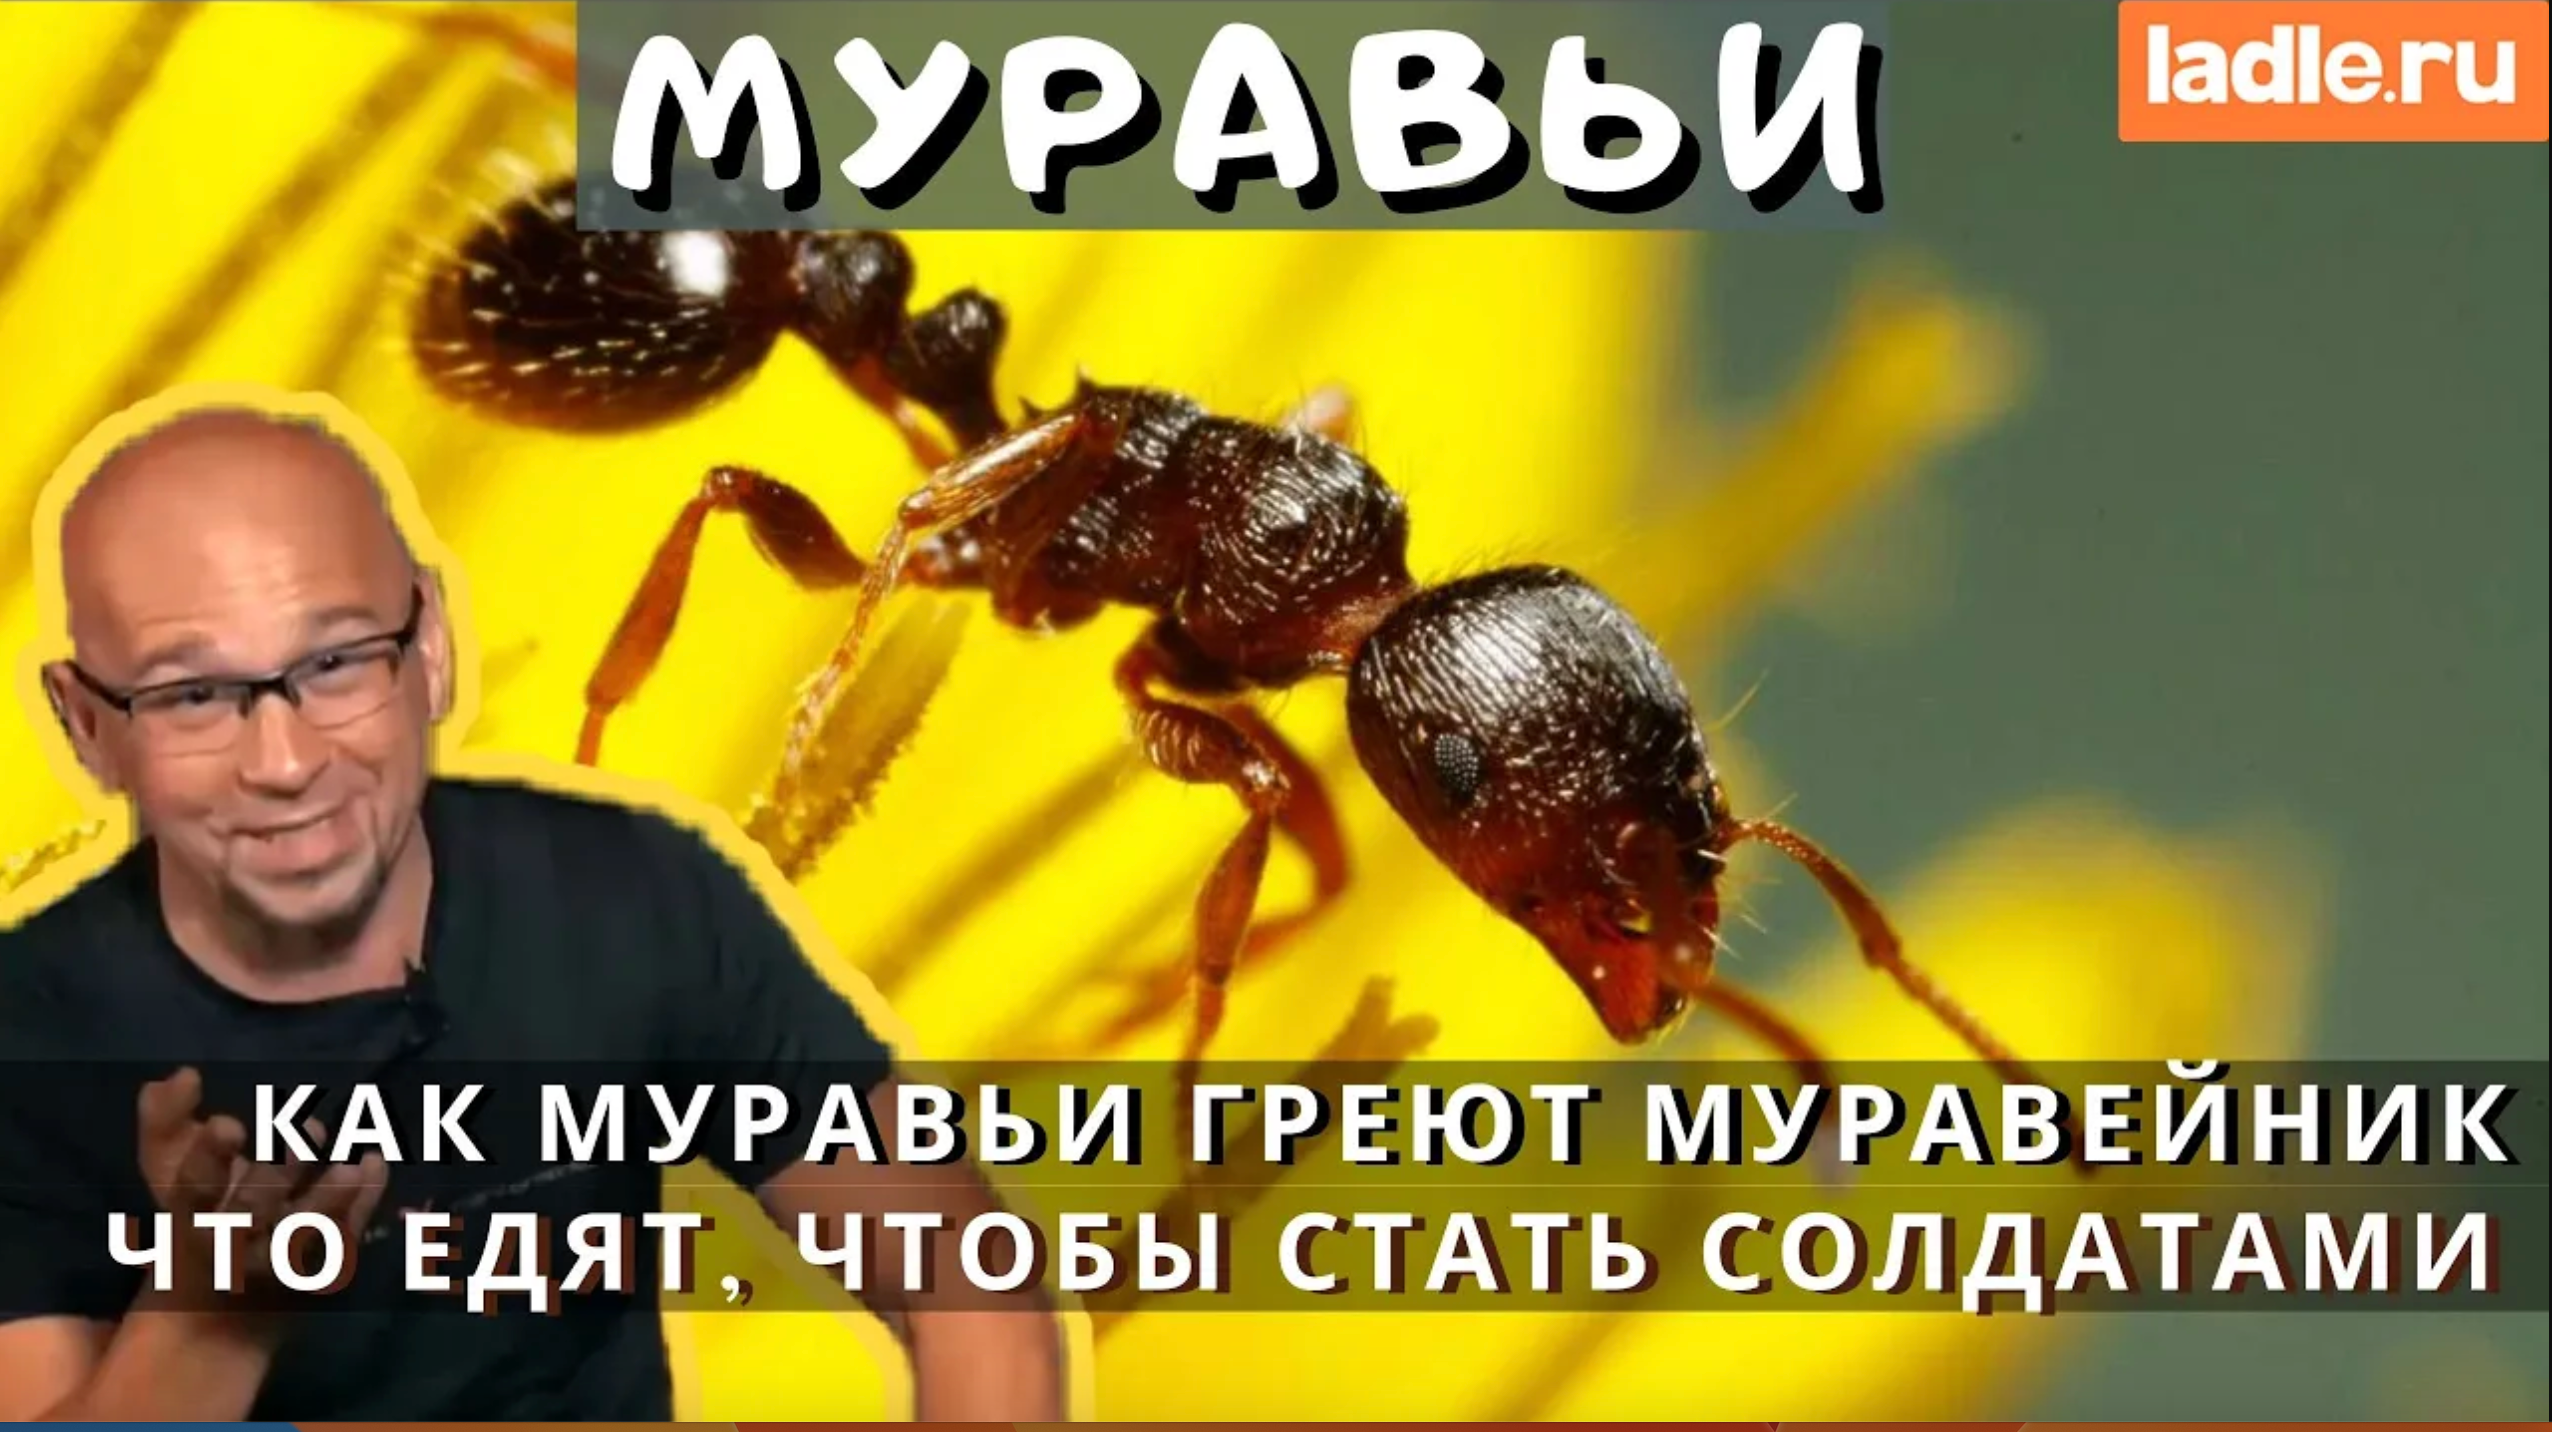 Муравей греет муравейник... жесть! Смотри факты из жизни муравейника | Лэйдл – Ladle